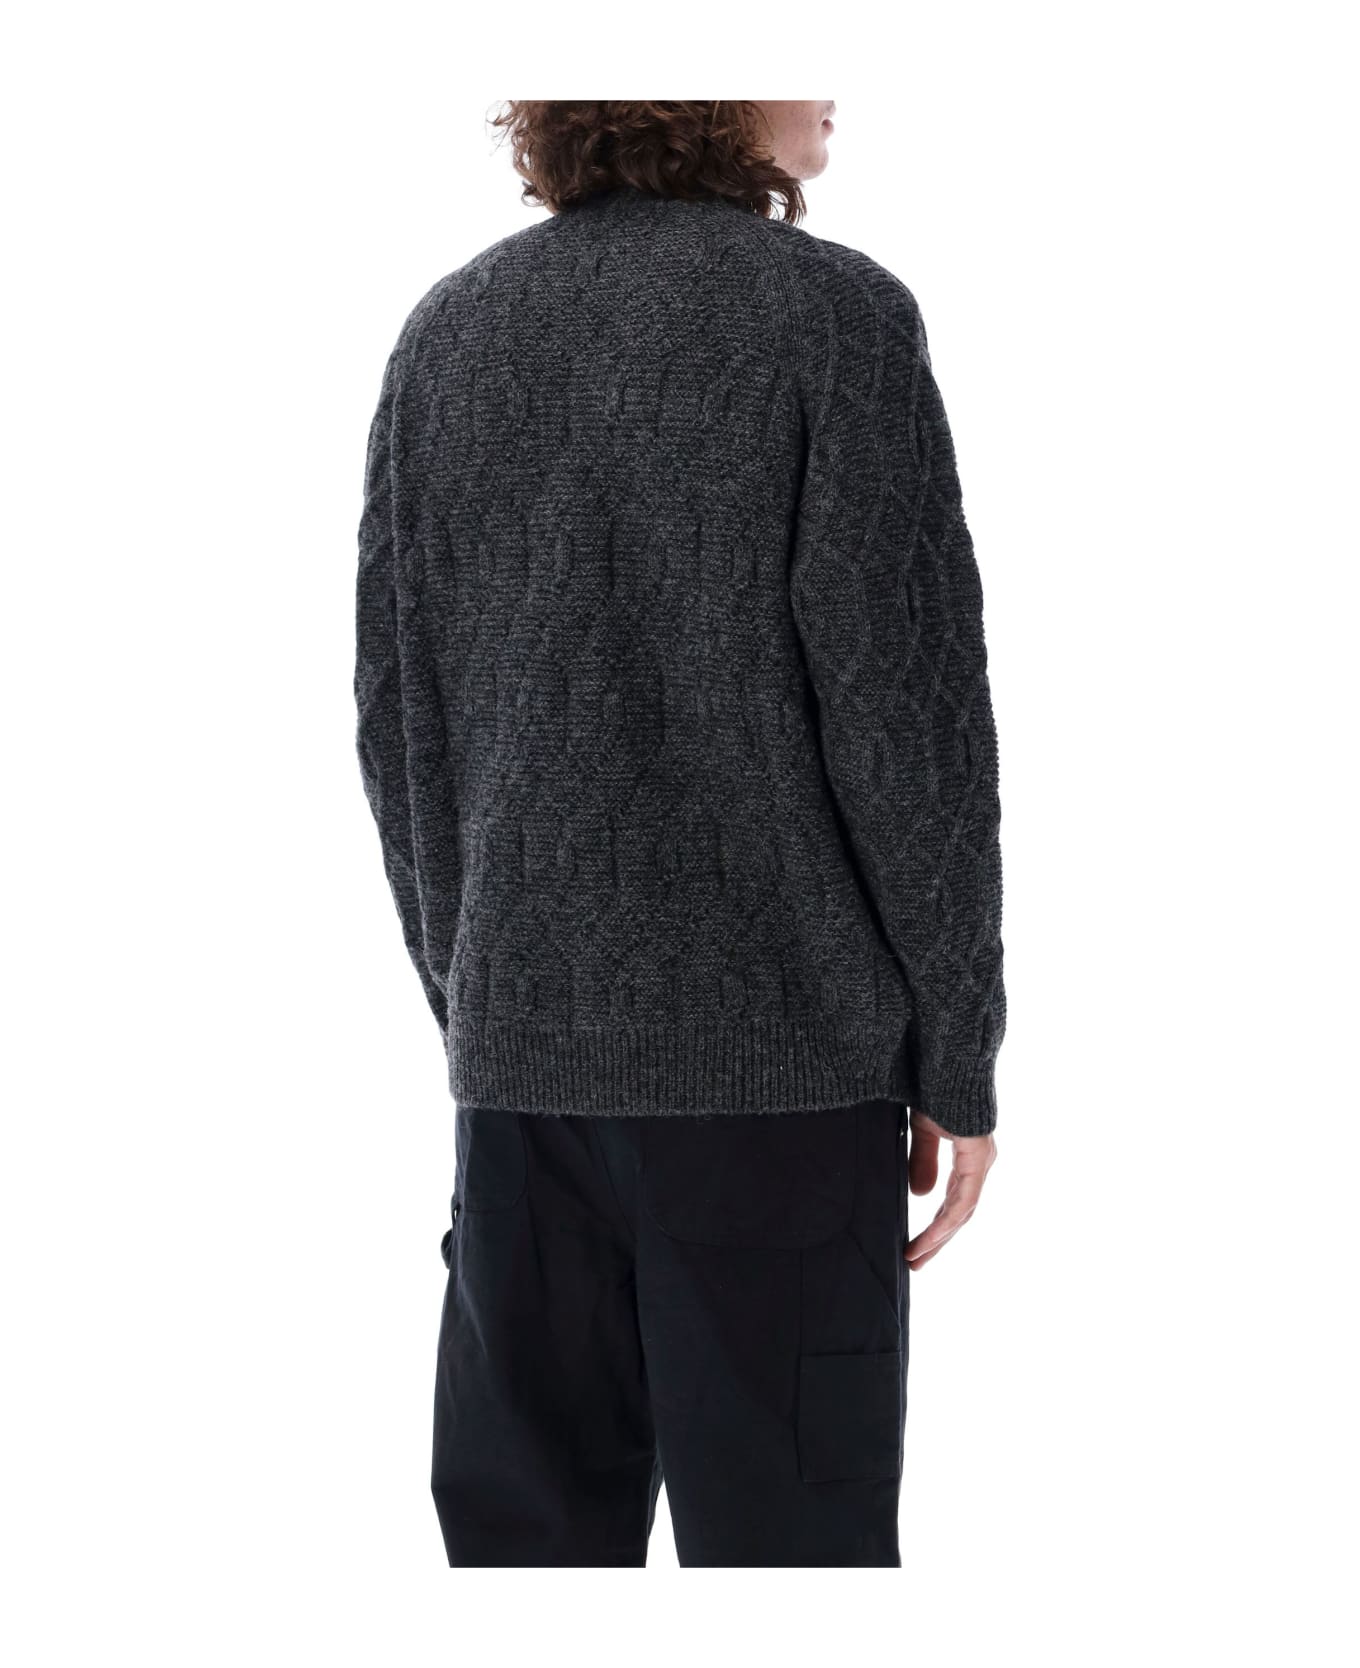 Comme des Garçons Homme Crewneck Wool Cable Sweater - CHARCOAL